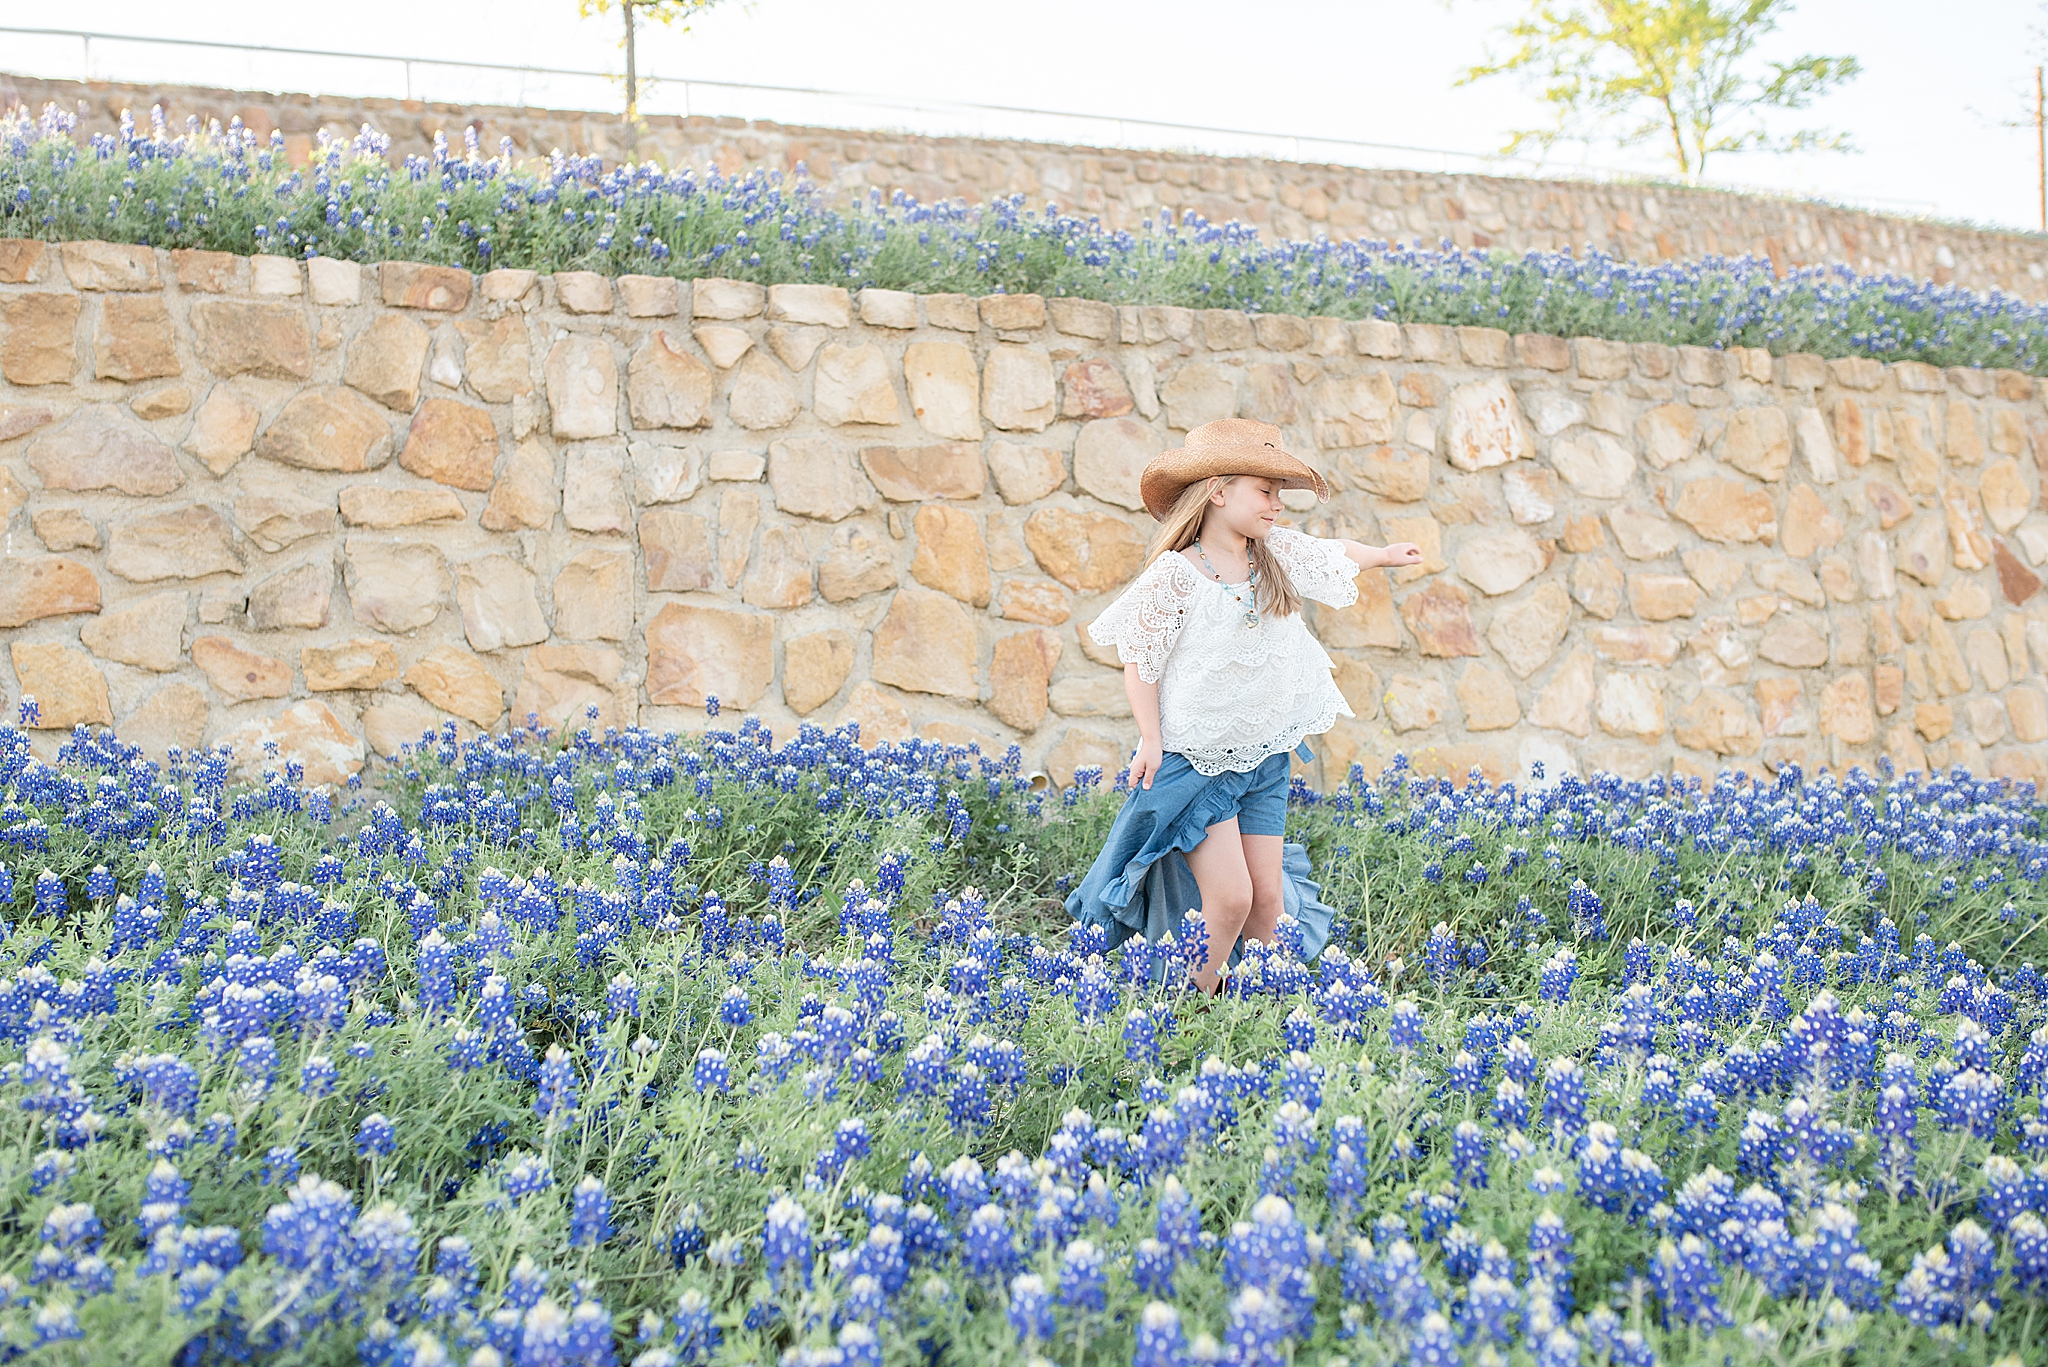 girl plays in field of bluebonnets in Texas